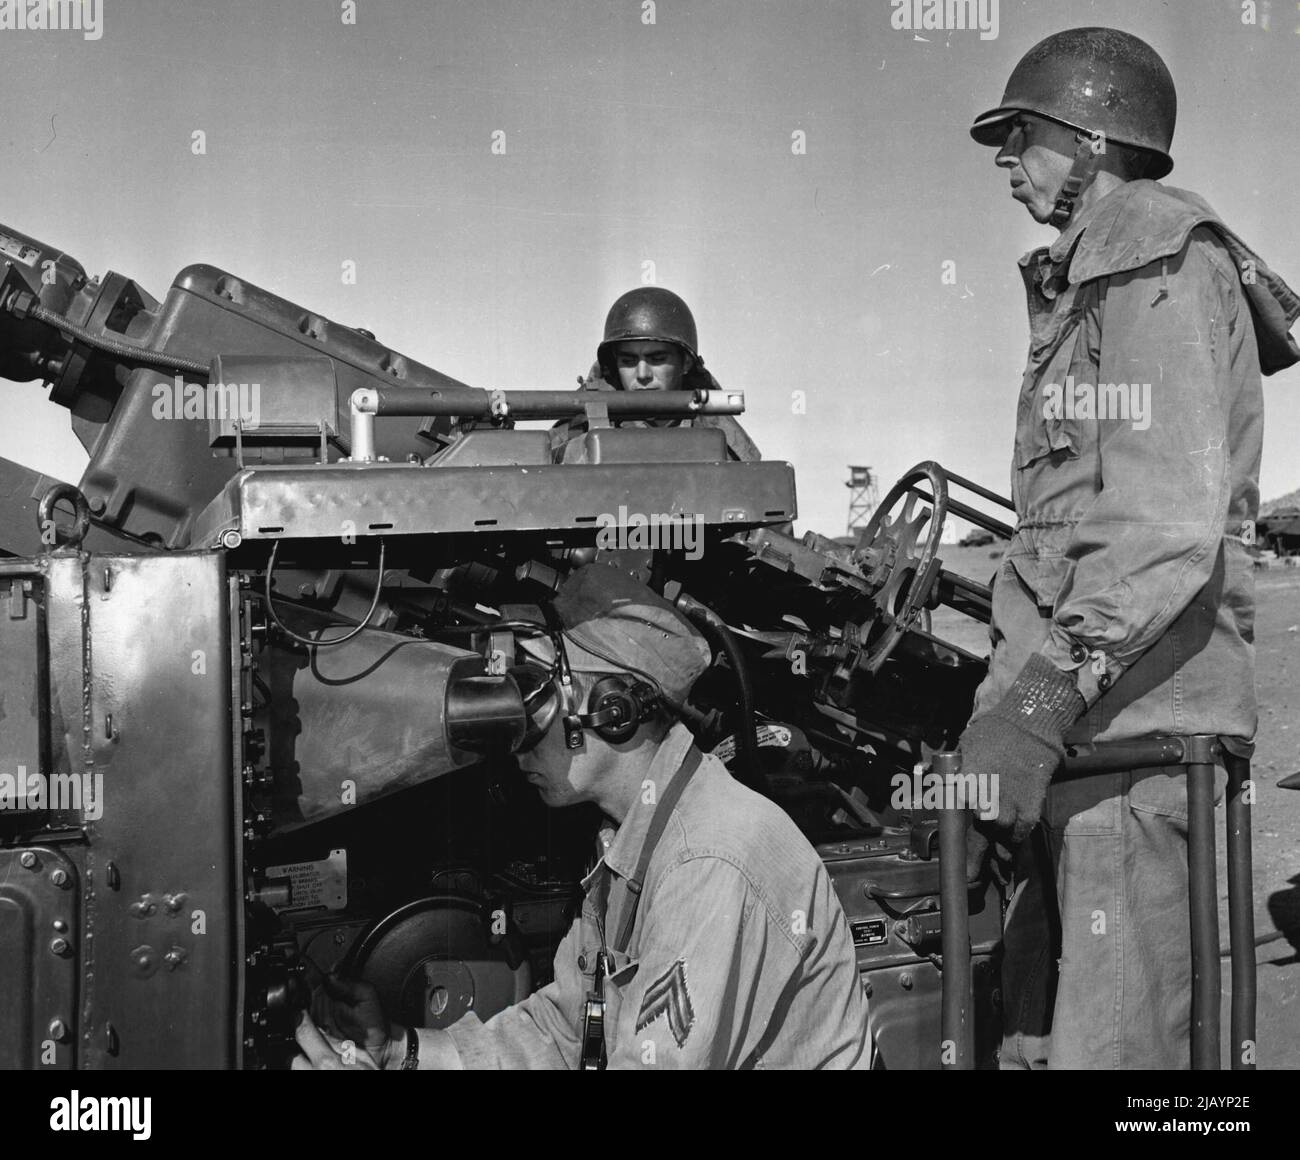 Regardez les Skies -- opérateur de radar Cpl. Joseph E. Brunner, Onaga, Kansas, règle son appareil de radar comme canons PFC. Eugene E. Keeney et Pvt. Gene E. ball, ville de Frederick, Missouri, se tenir à l'action. Ils sont membres de la batterie a, 531st anti Aircraft artillerie BN., fort Bliss, Texas. 06 décembre 1954. (Photo par photo officielle de l'armée américaine). Banque D'Images